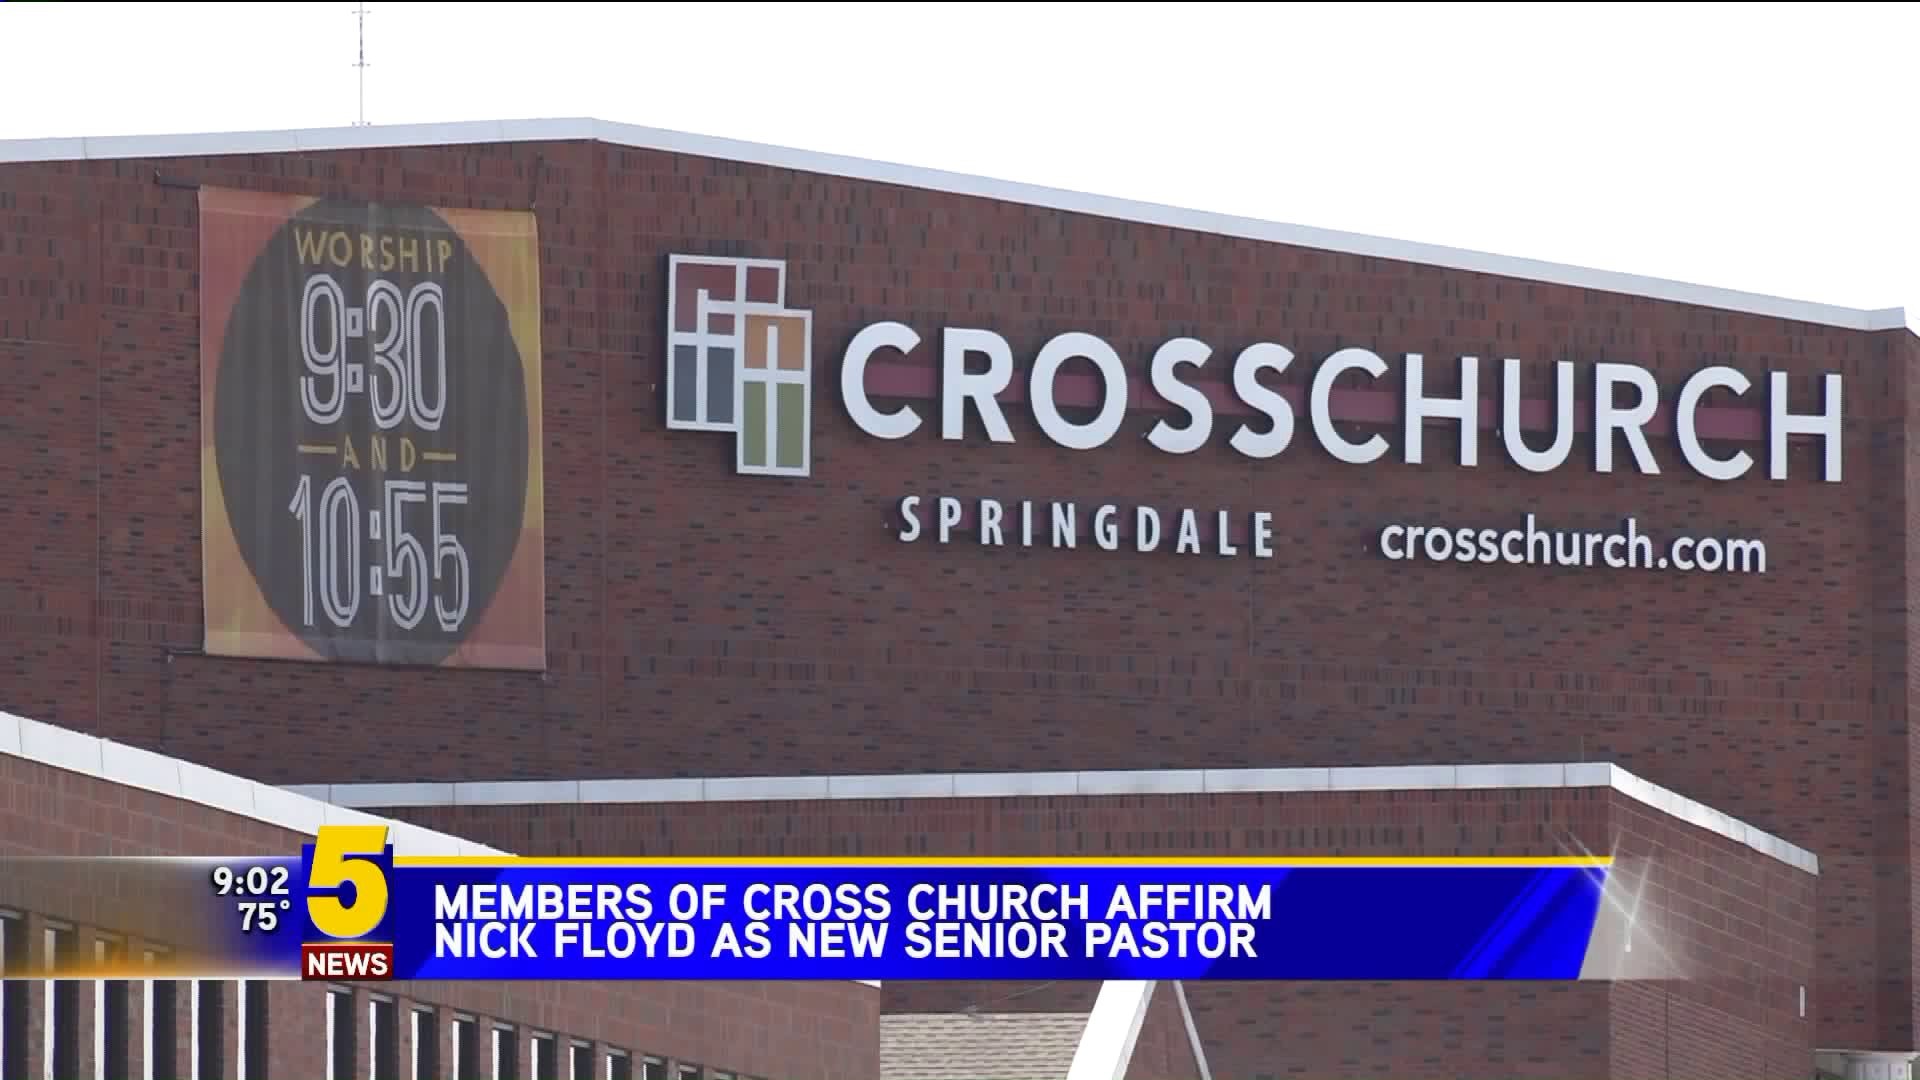 Cross Church Affirms New Senior Pastor